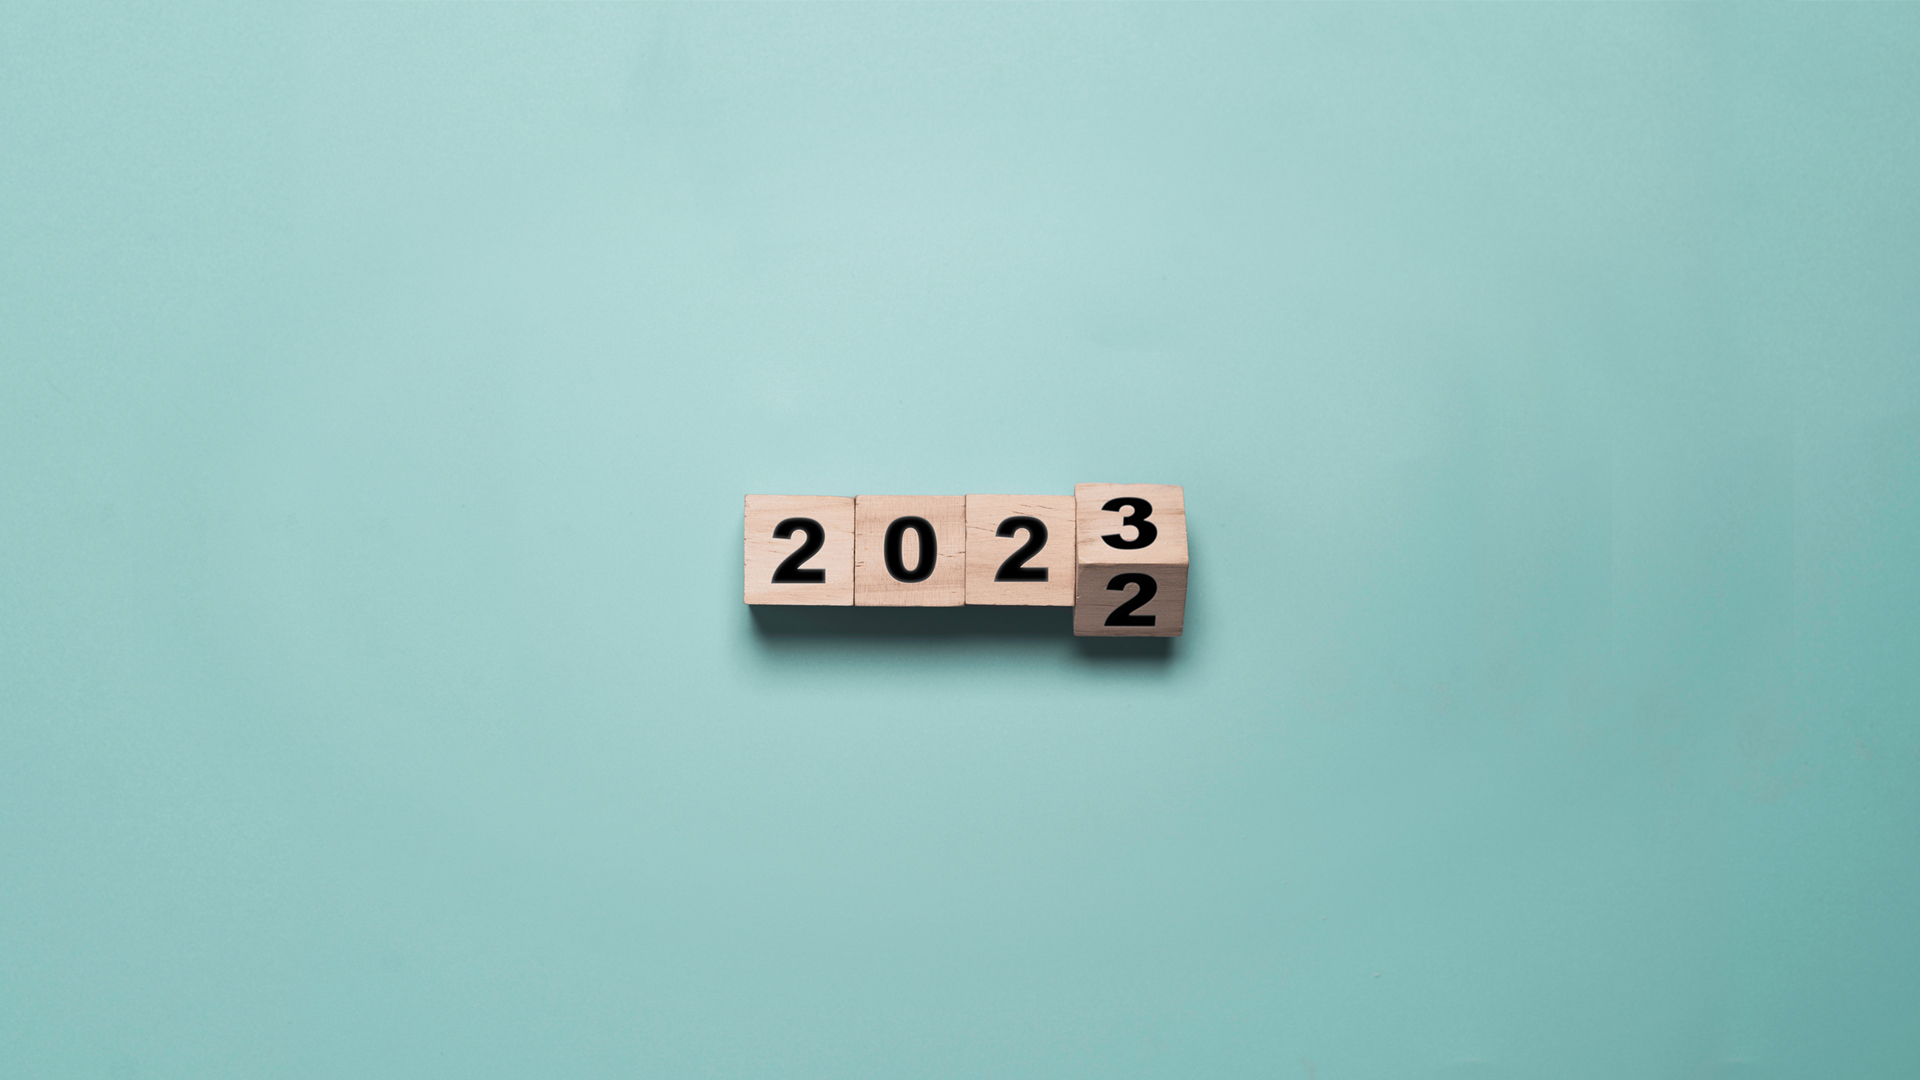 Eindejaarstips_2022-23. Blokjes hout met cijfers 2022-3